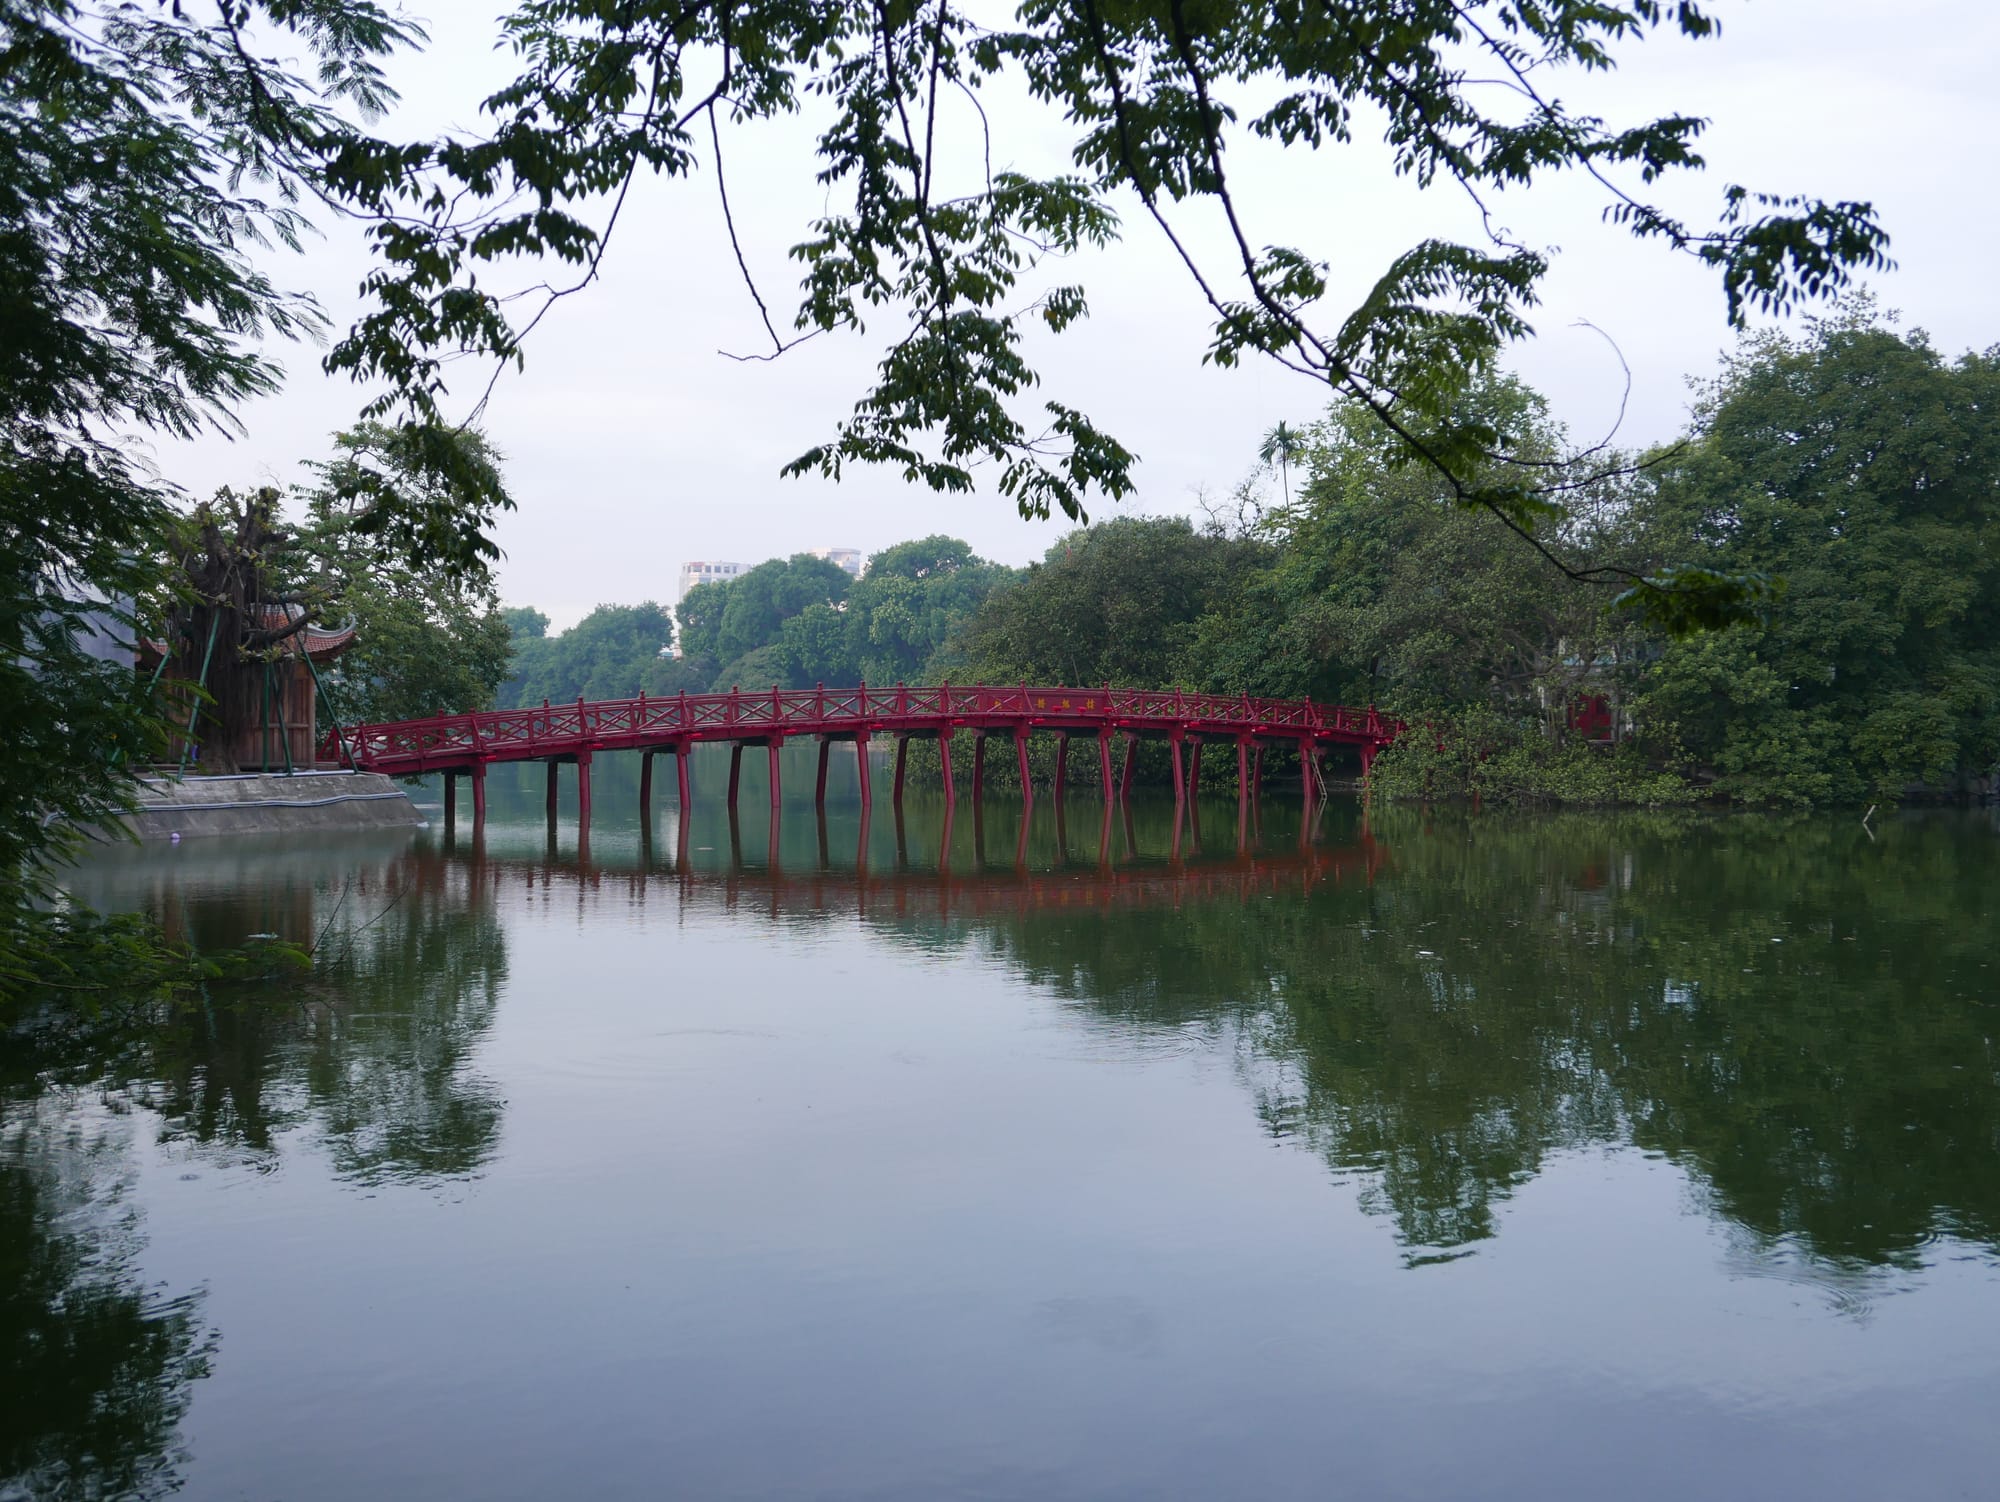 Photo by Author — Hồ Hoàn Kiếm (Hoan Kiem Lake), Đinh Tiên Hoàng (Lê Thái Tổ), Hoàn Kiếm, Thành Phố Hà Nội, Hanoi, Vietnam